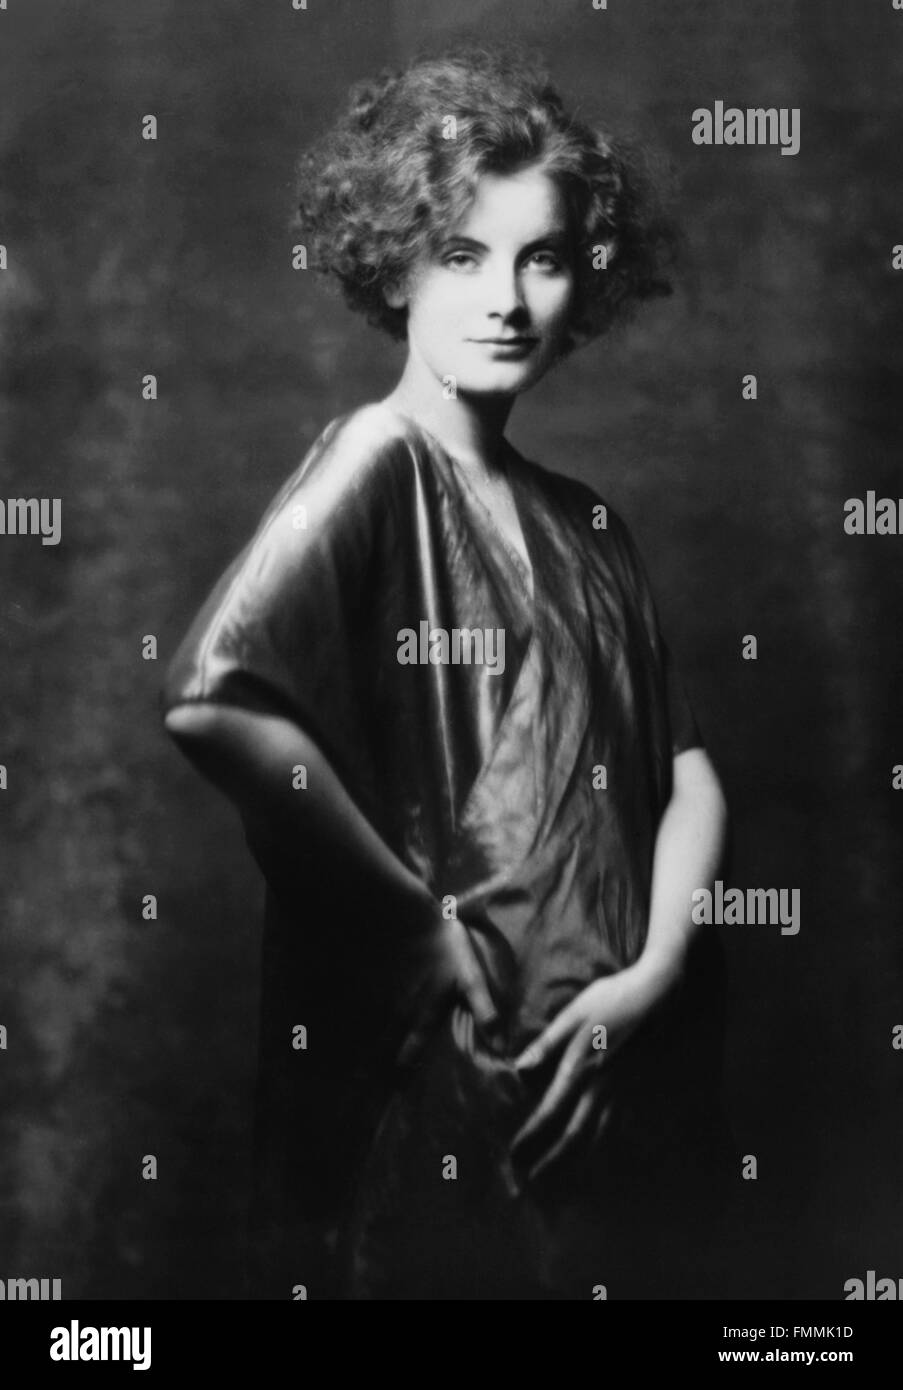 Greta Garbo. Retrato del sueco nacido una estrella de cine, Greta Garbo, por Arnold Genthe, 1925 Foto de stock